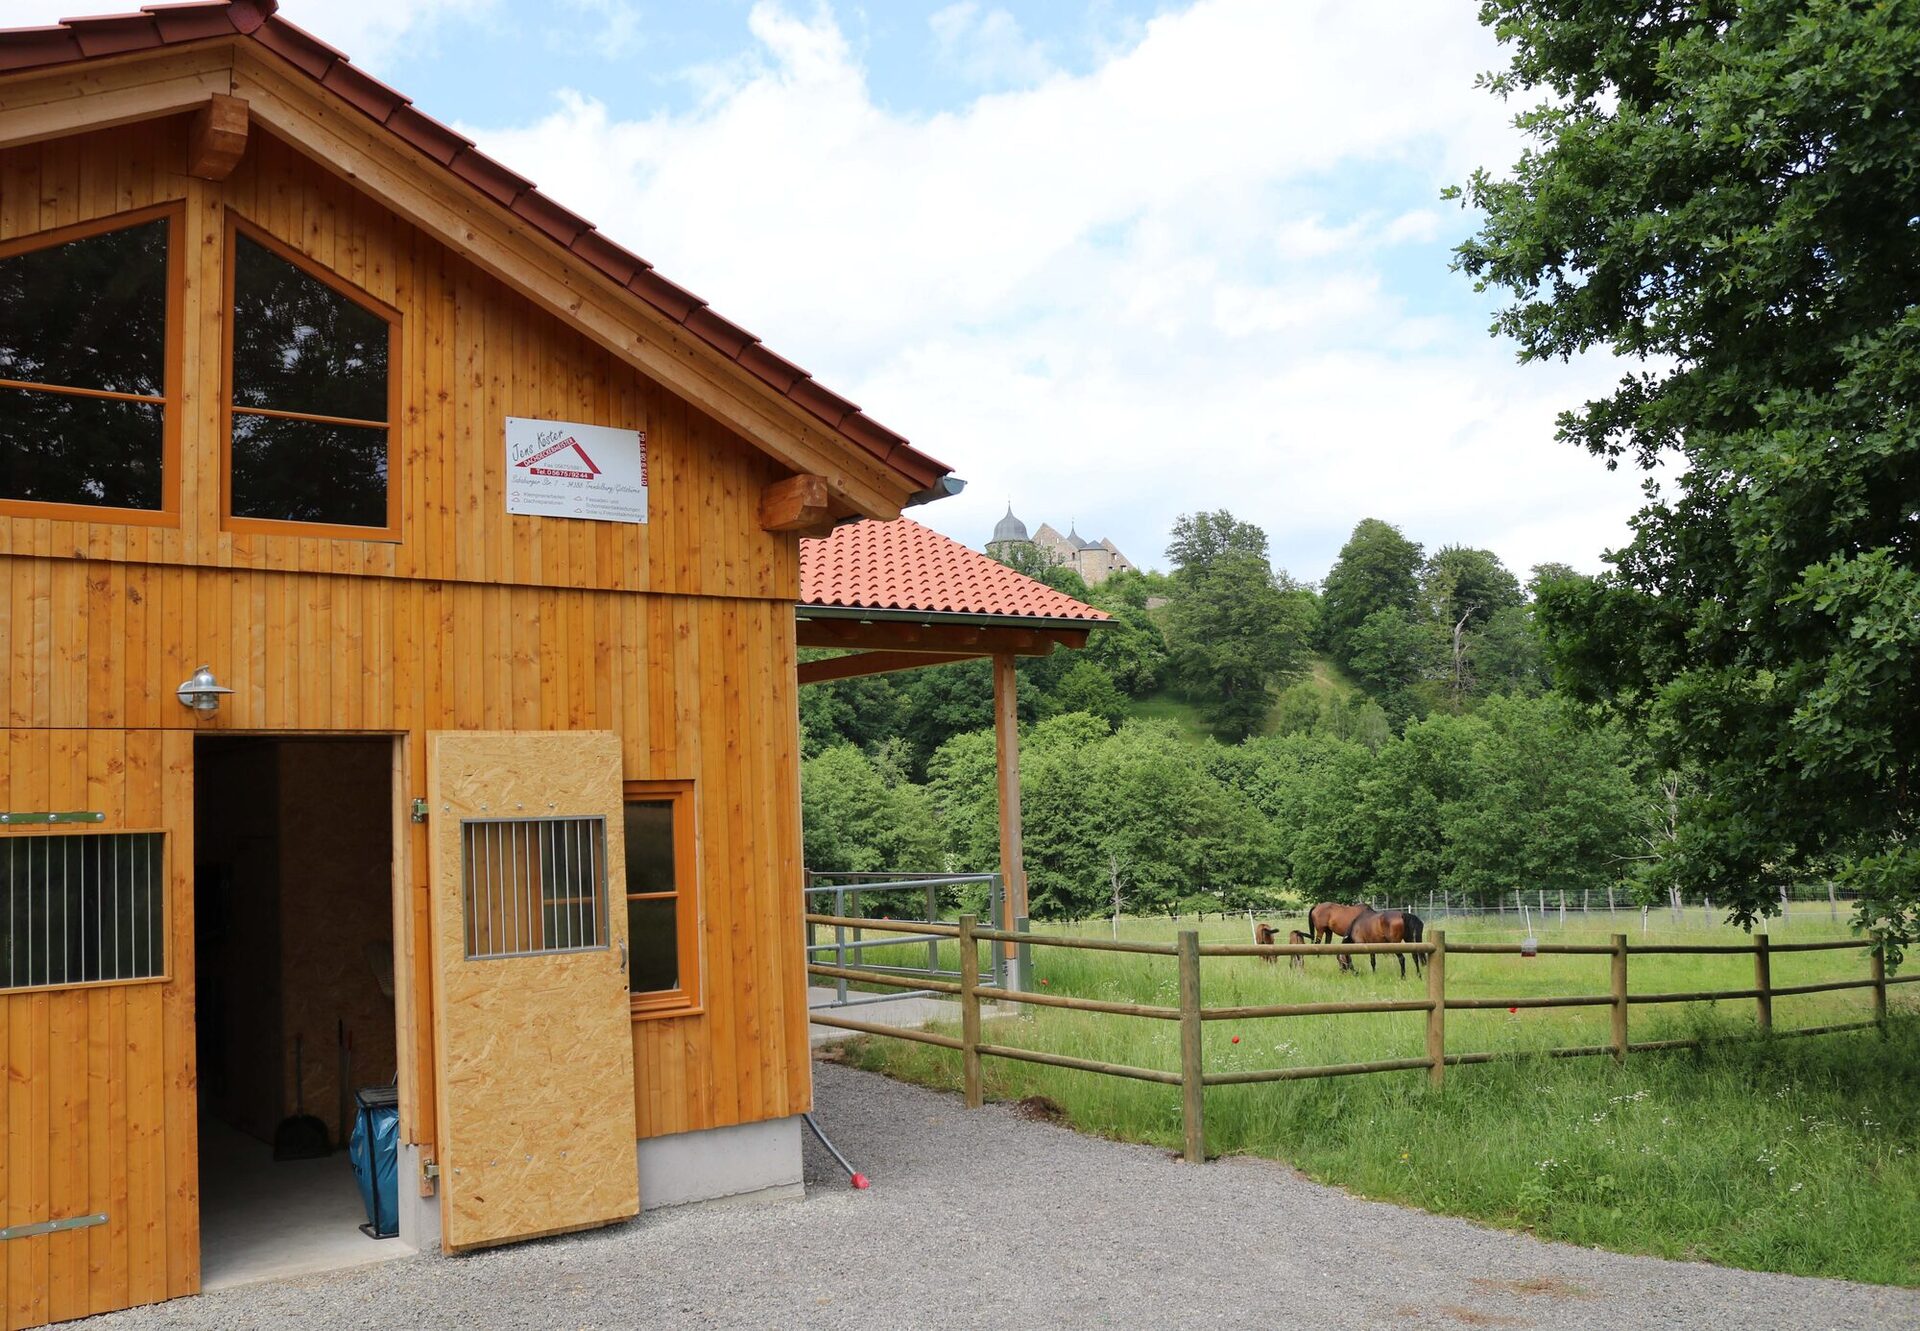 Einen rund 14.000 Quadratmeter umfassenden Bereich hat der Tierpark Sababurg für die Beberbecker Pferde geschaffen, mit Stallungen, Paddocks und großzügigem Auslauf. Die Anlage liegt mitten im Tierpark, direkt an Wegeführung zum Bauernhof und der Kirchenscheune.